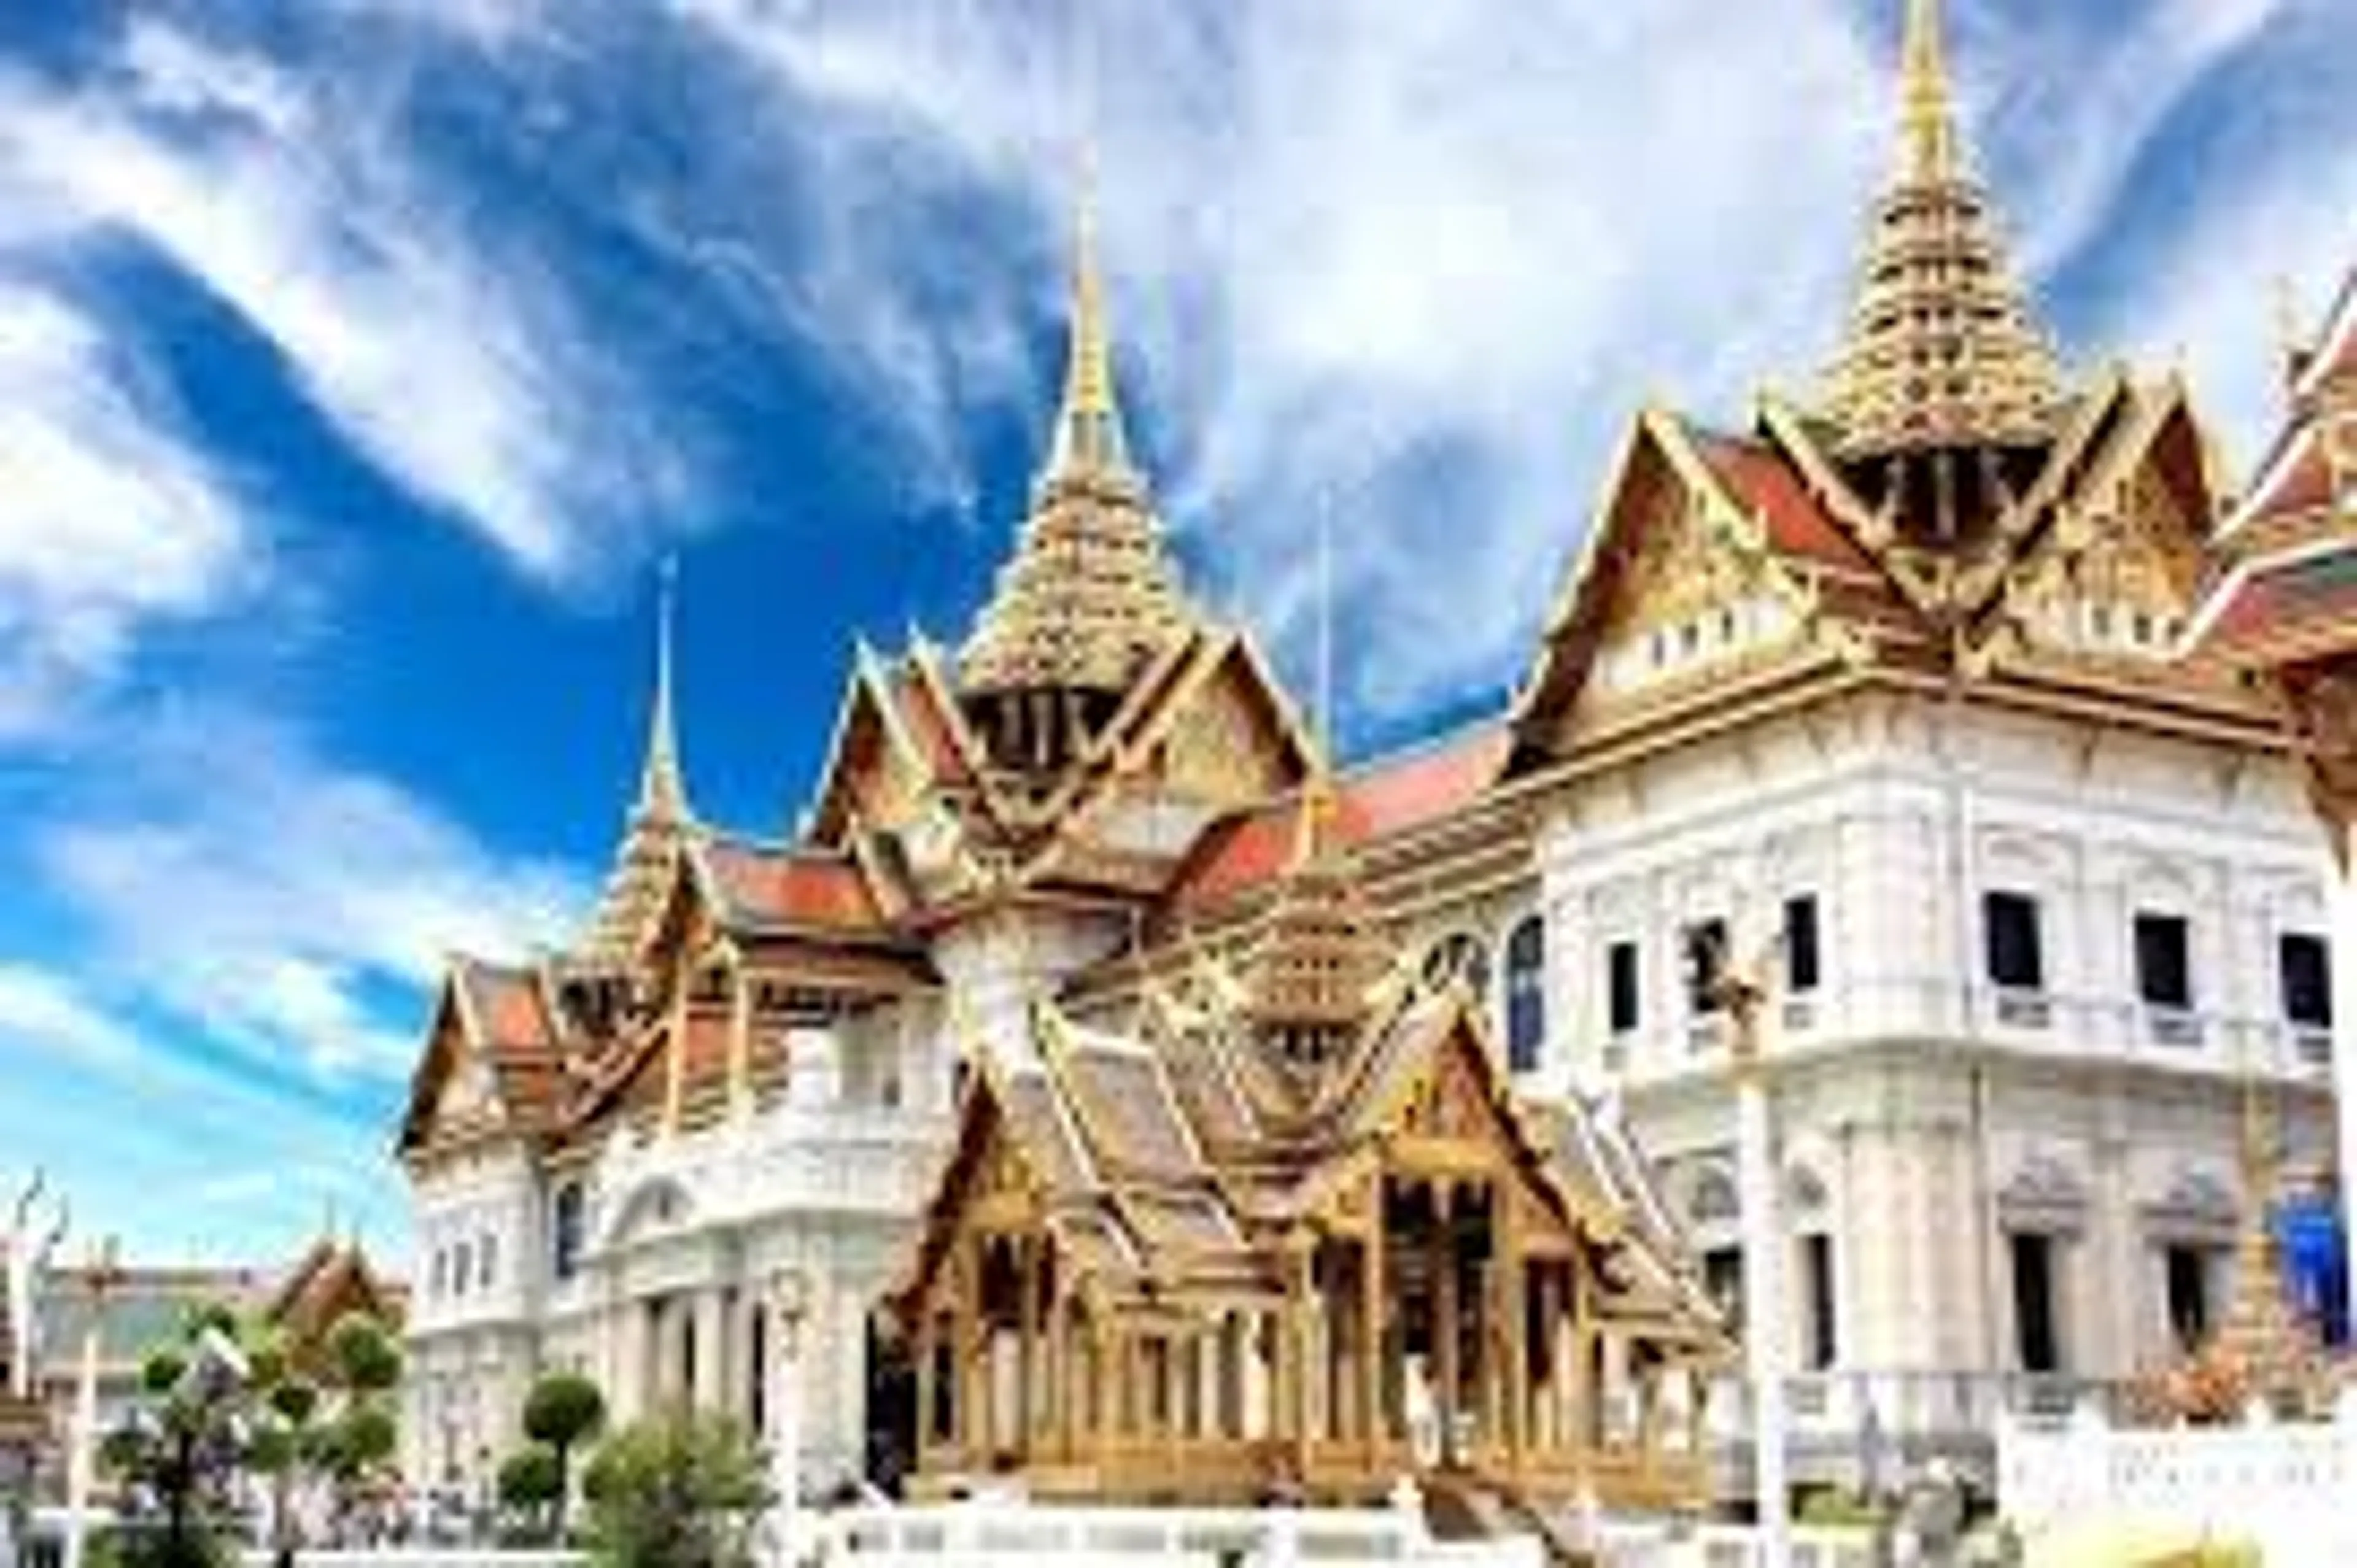 Lanna Architecture Center là một điểm đến văn hóa nổi tiếng tại Chiang Mai, Thái Lan